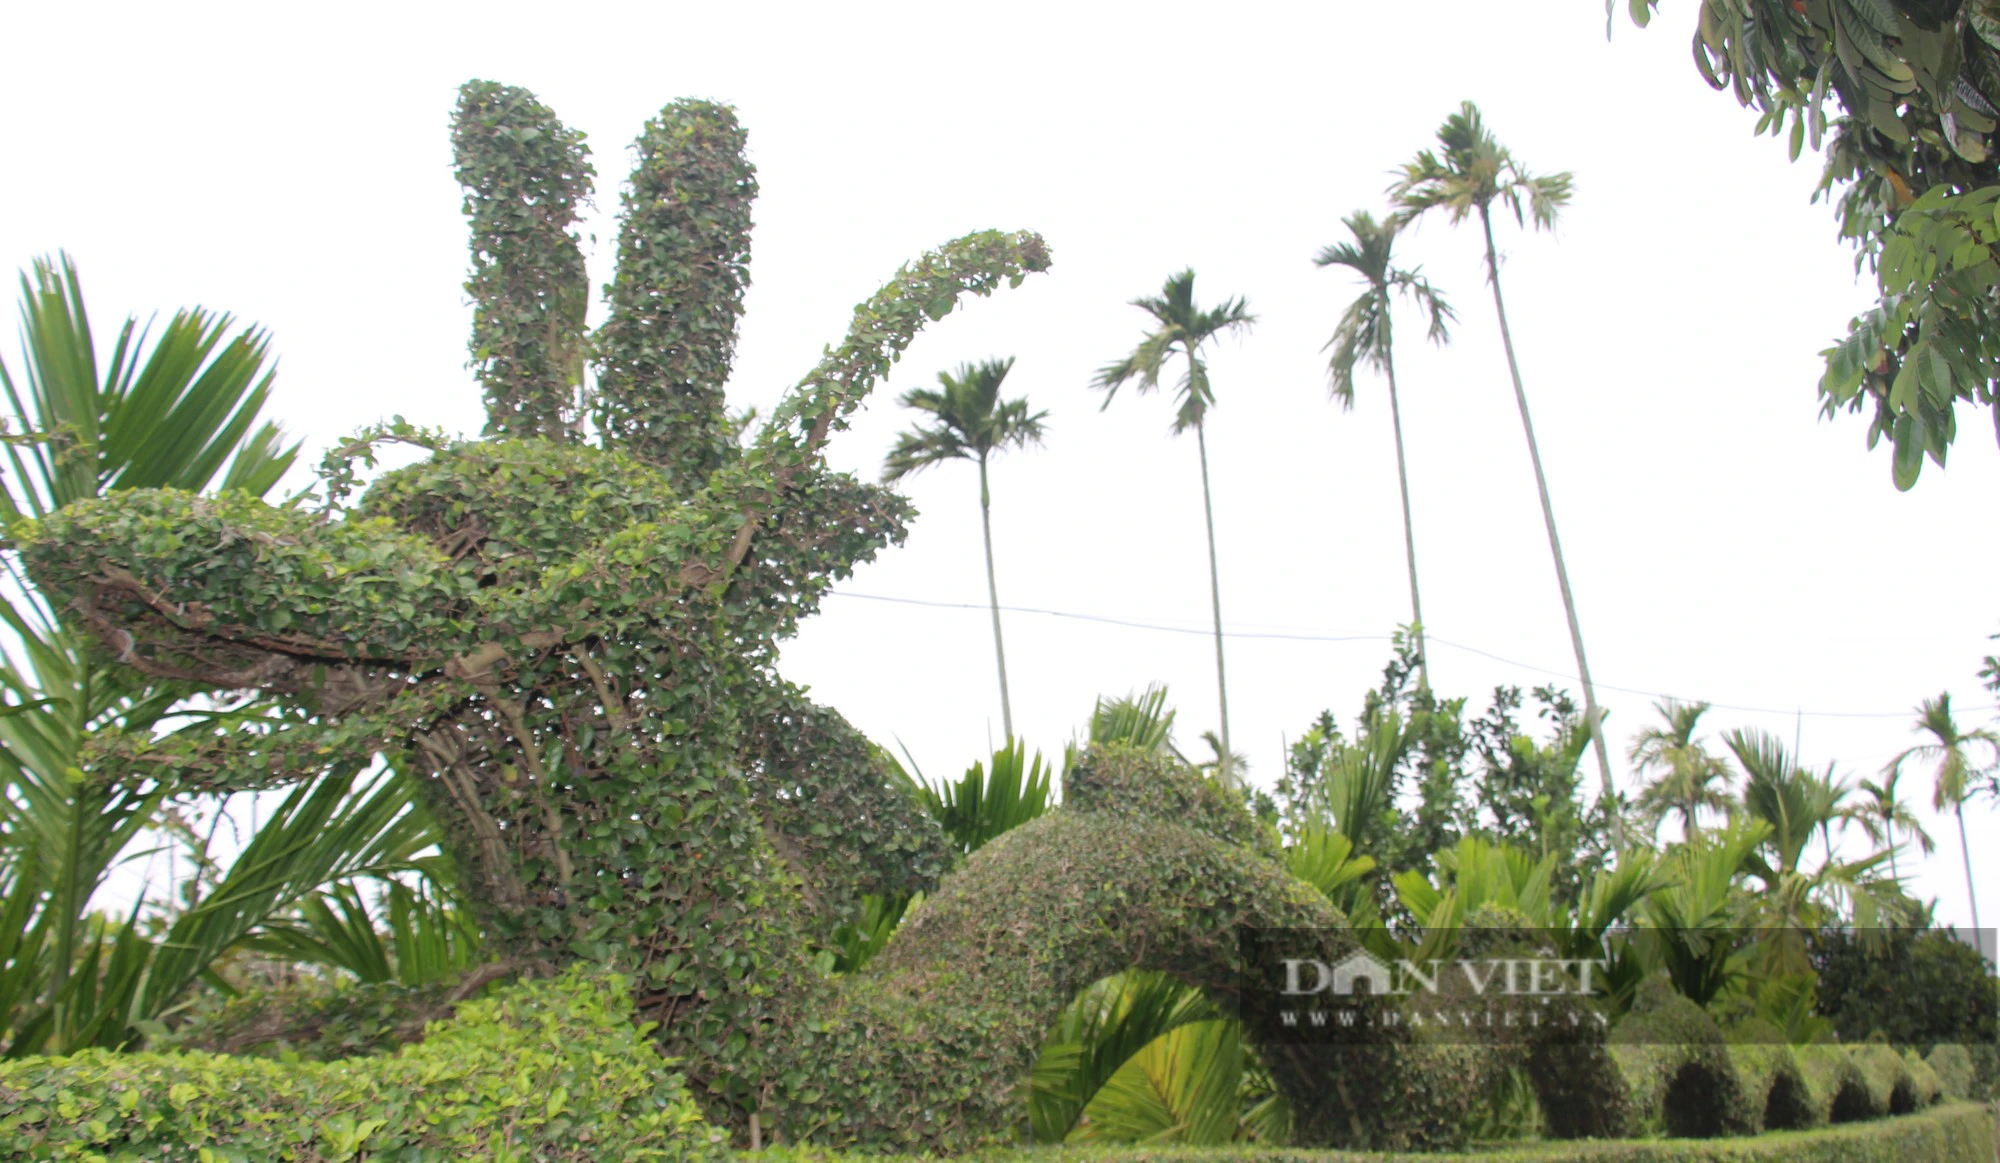 Lạ mắt với linh vật khổng lồ hình rồng dài 30 mét của một gia đình ở Nam Định làm từ cây duối- Ảnh 5.